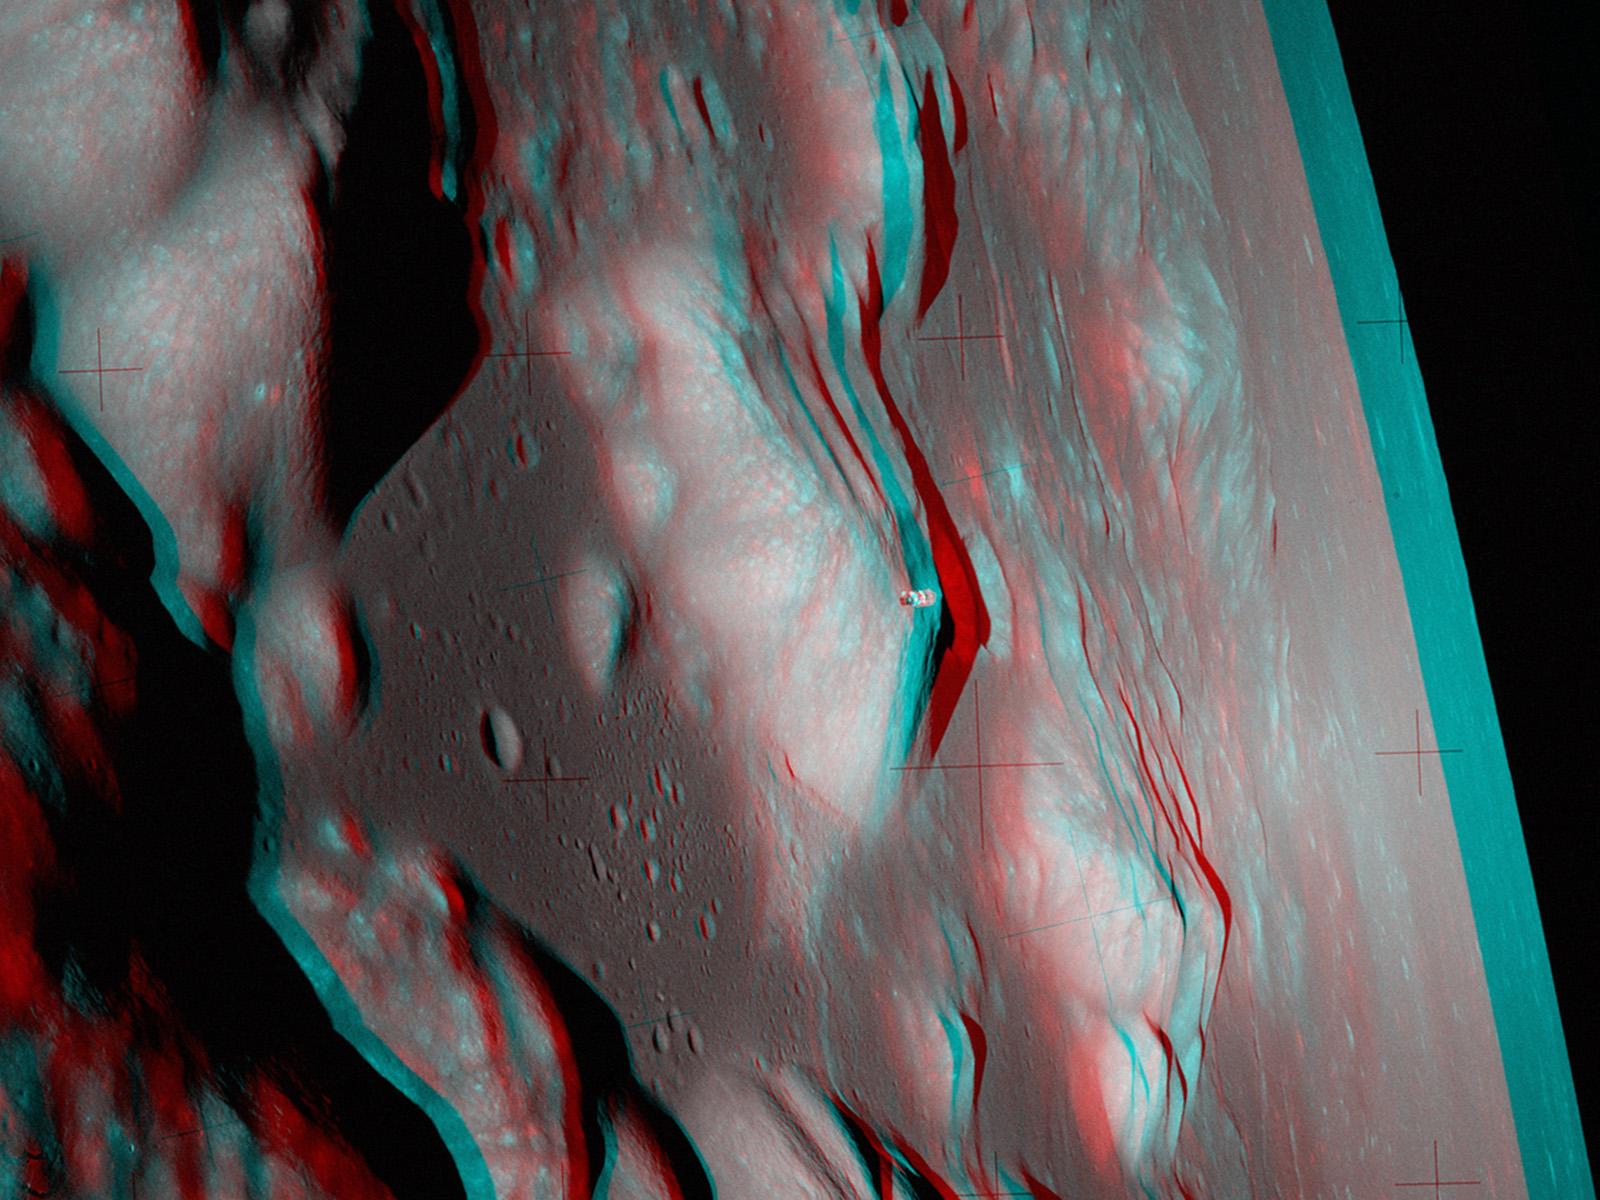 صورة مزدوجة بالأزرق والأحمر تُظهر القمر بتضاريس واضحة وفوقه جسم صغير هو الوحدة "أمِريكا"